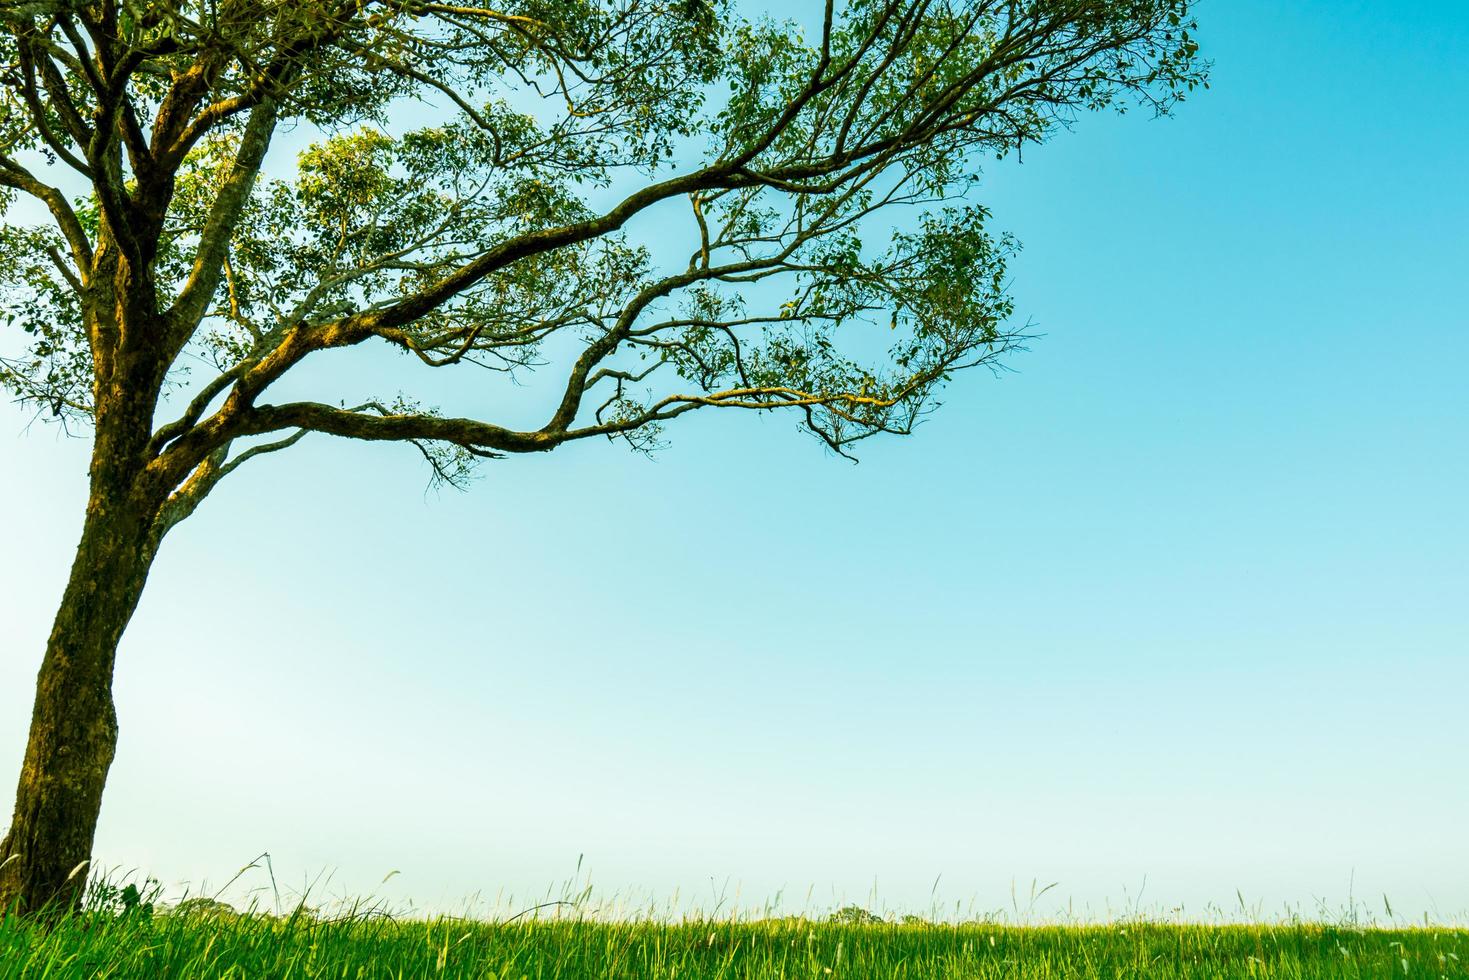 grote groene boom met mooi takkenpatroon en groen grasveld met witte bloemen op een heldere blauwe hemelachtergrond op een mooie zonnige dag. foto